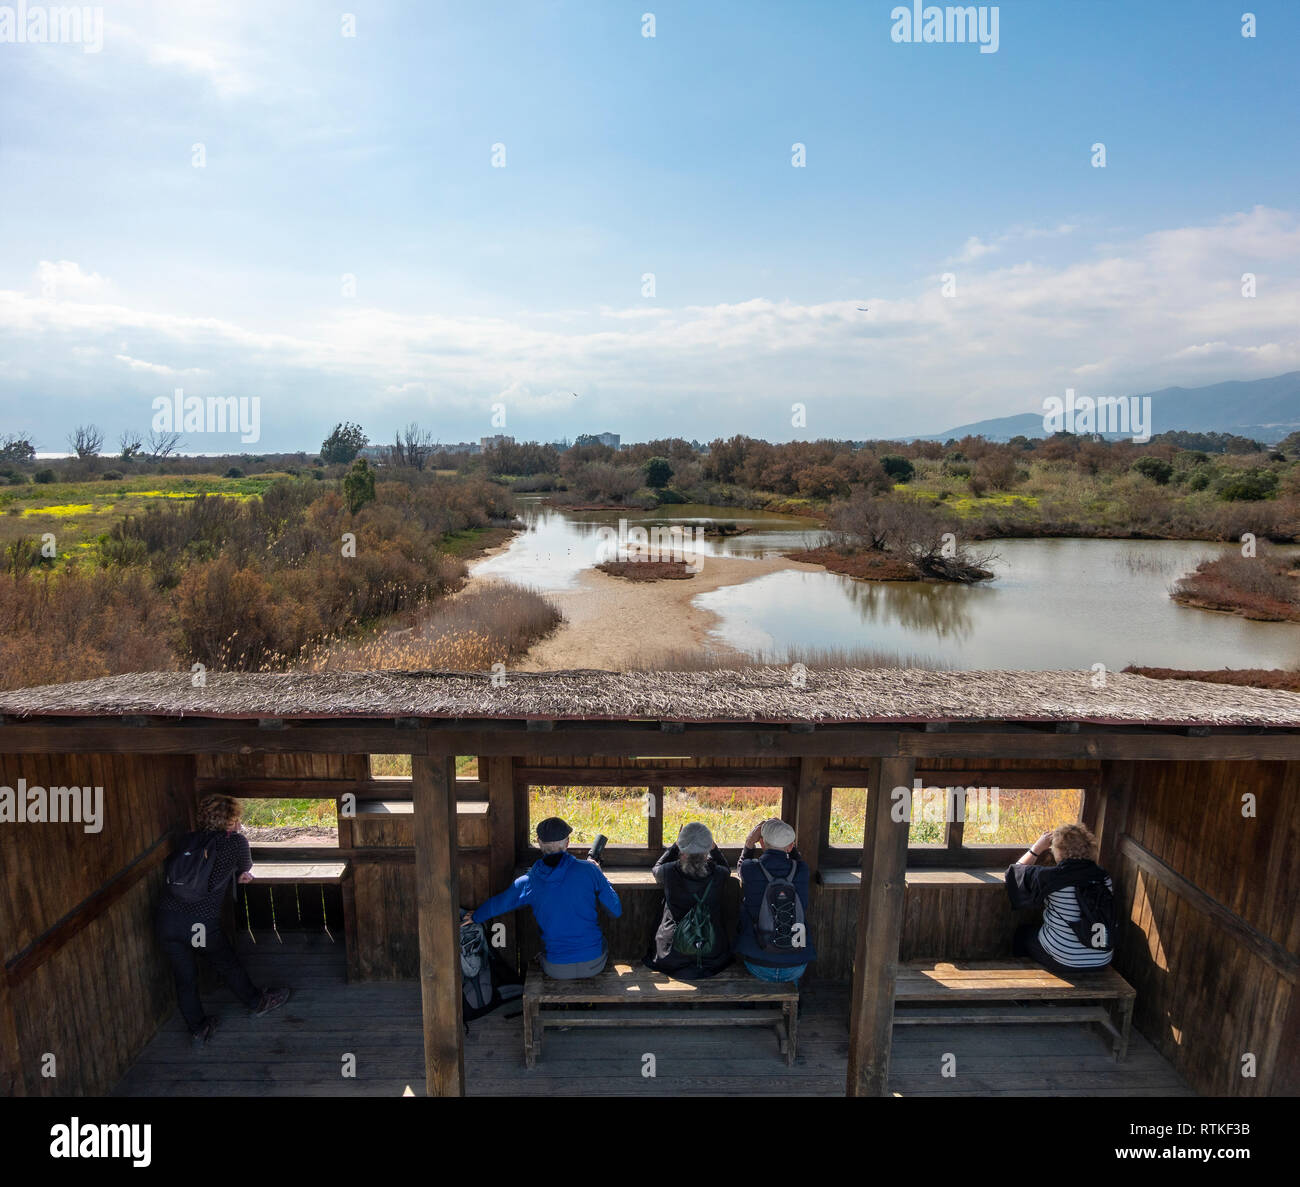 Vogelbeobachter Birdwatching britische Touristen expats Vogelbeobachtung von der Mündung des Flusses Guadalhorce ausblenden Natürliche Umgebung Malaga Costa del Sol Spanien im Winter Stockfoto